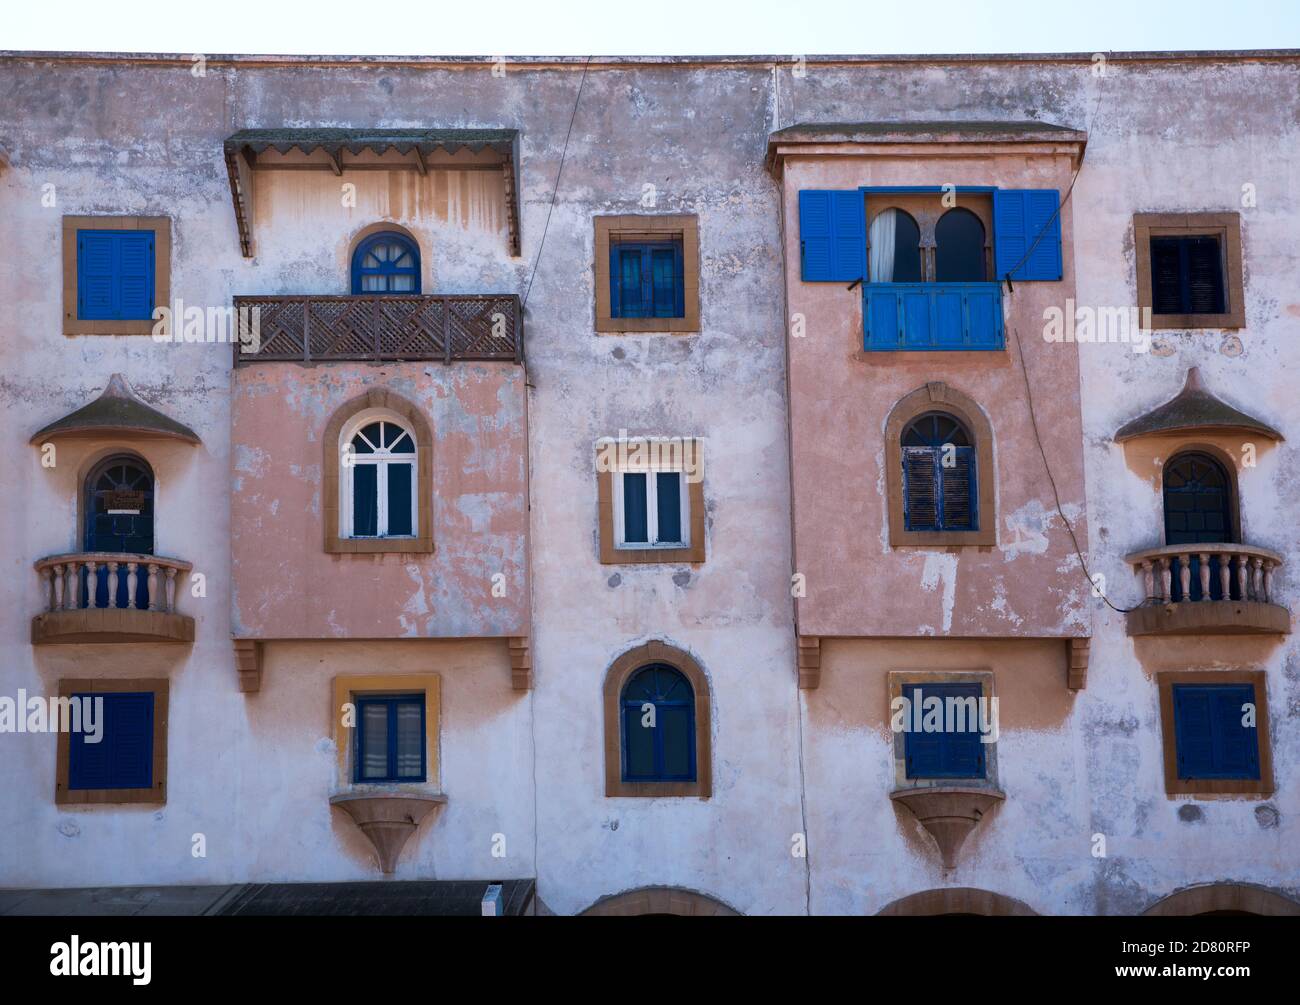 Maroc, Fès, façade d'un bâtiment avec plusieurs fenêtres de différentes tailles et balcons Banque D'Images